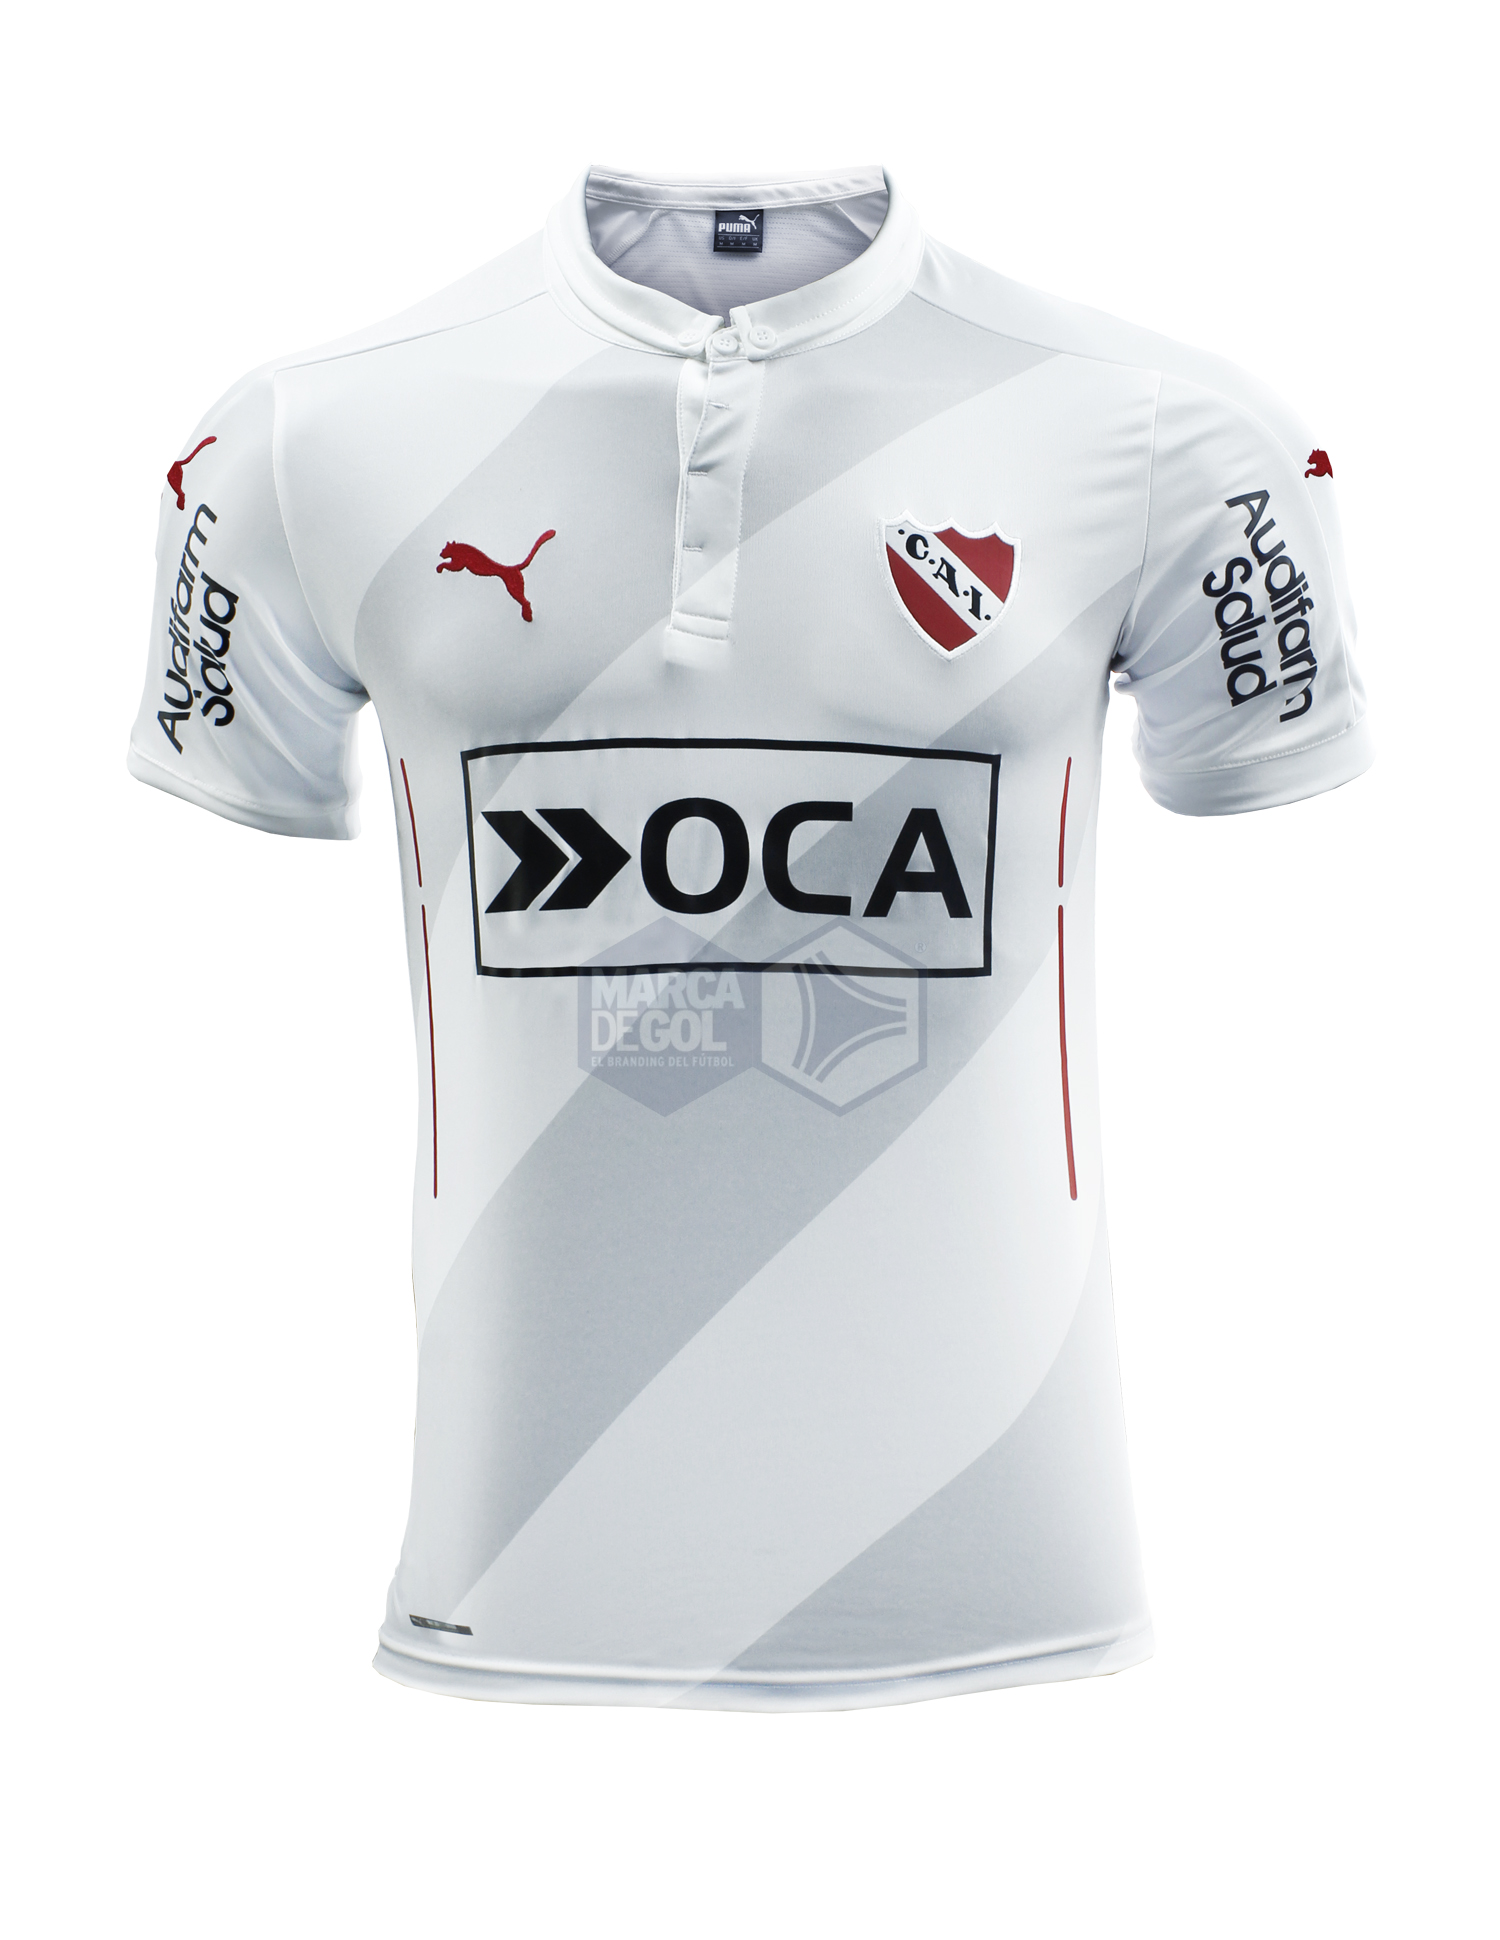 Camiseta Independiente PUMA blanca 2016